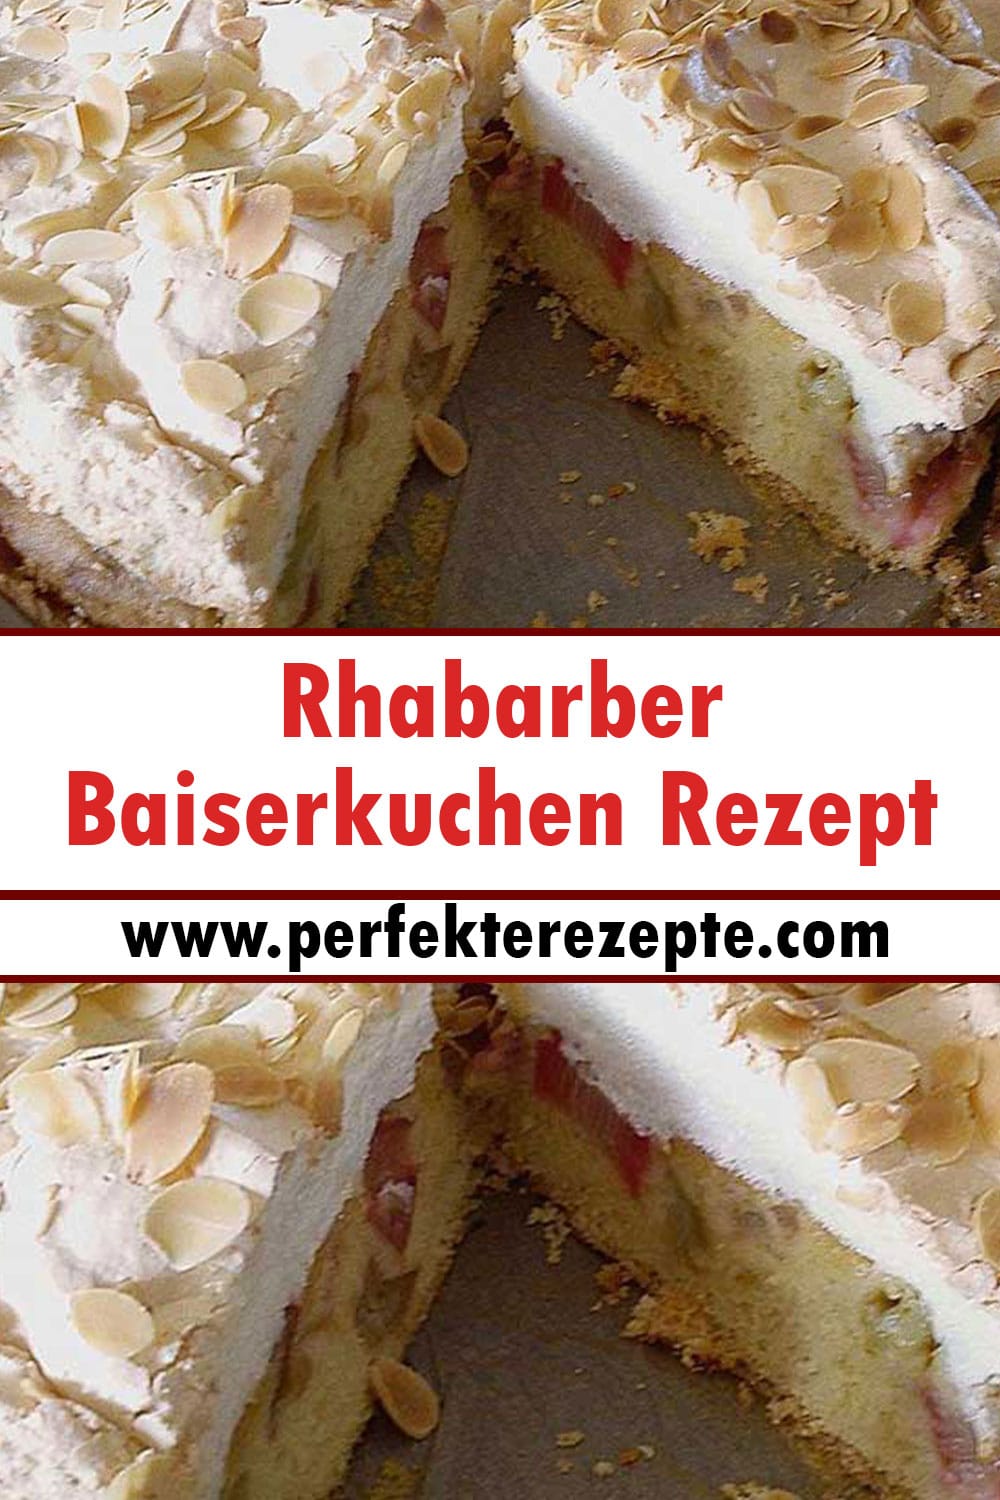 Rhabarber Baiserkuchen Rezept